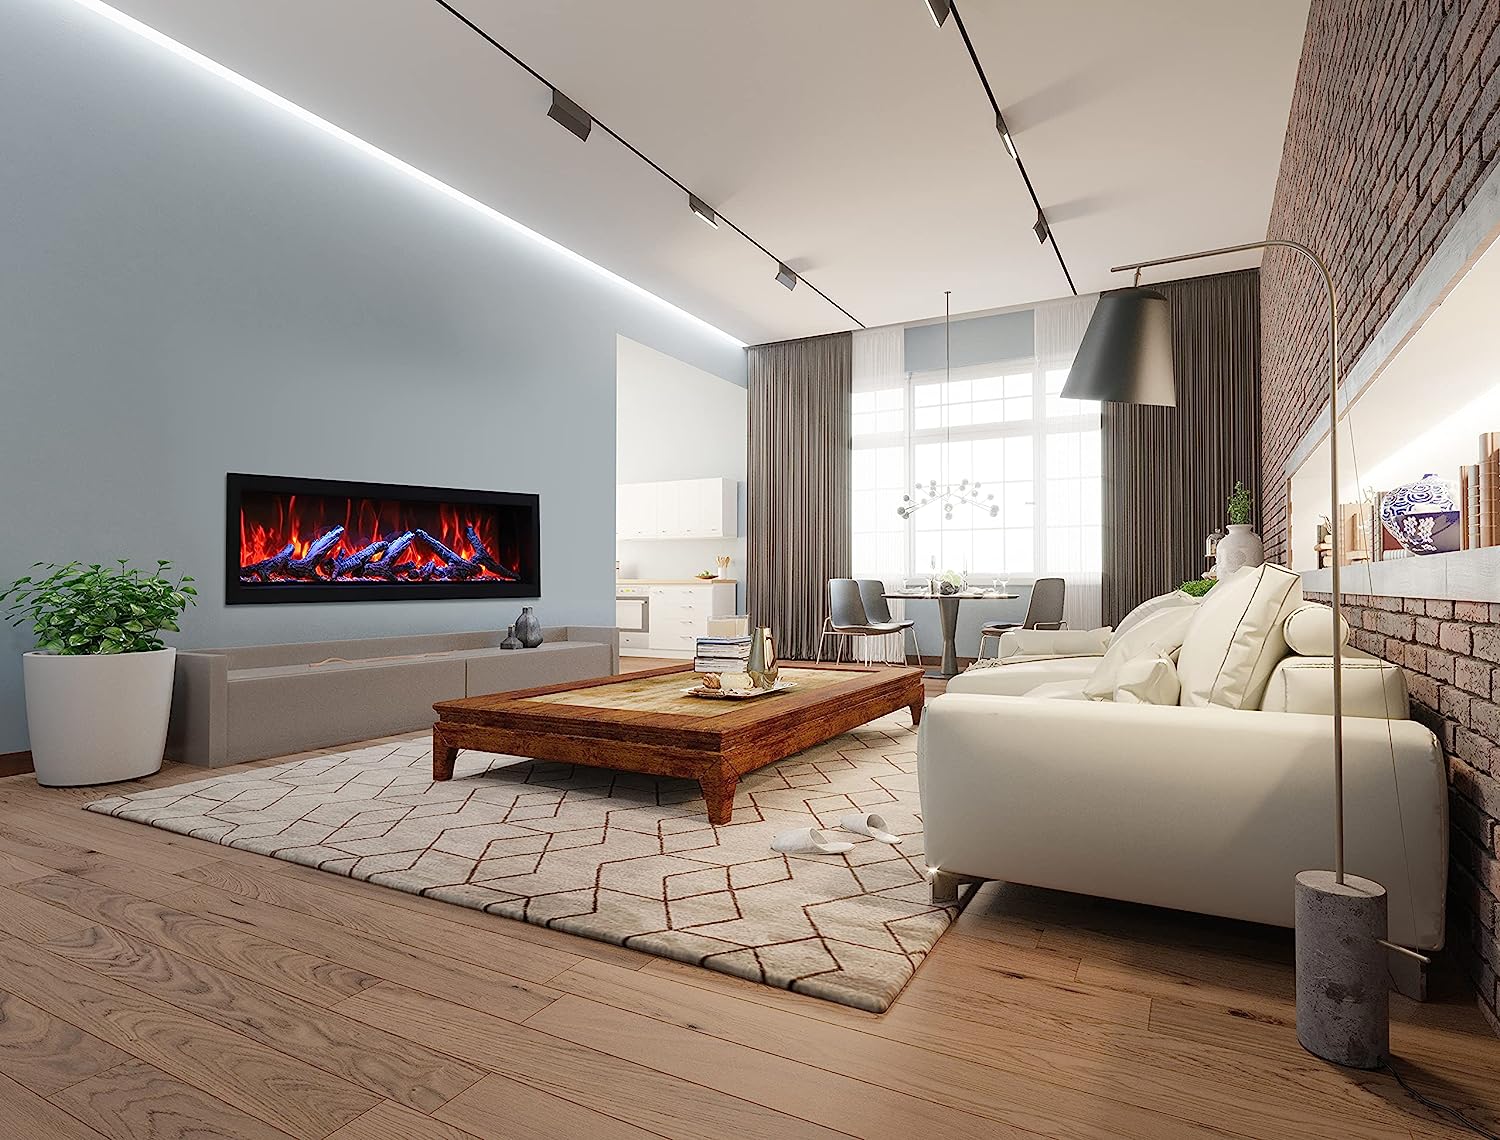 Amantii 60" Panorama Deep Extra Tall Electric Fireplace -BI-60-DEEP-XT- Lifestyle Living Room